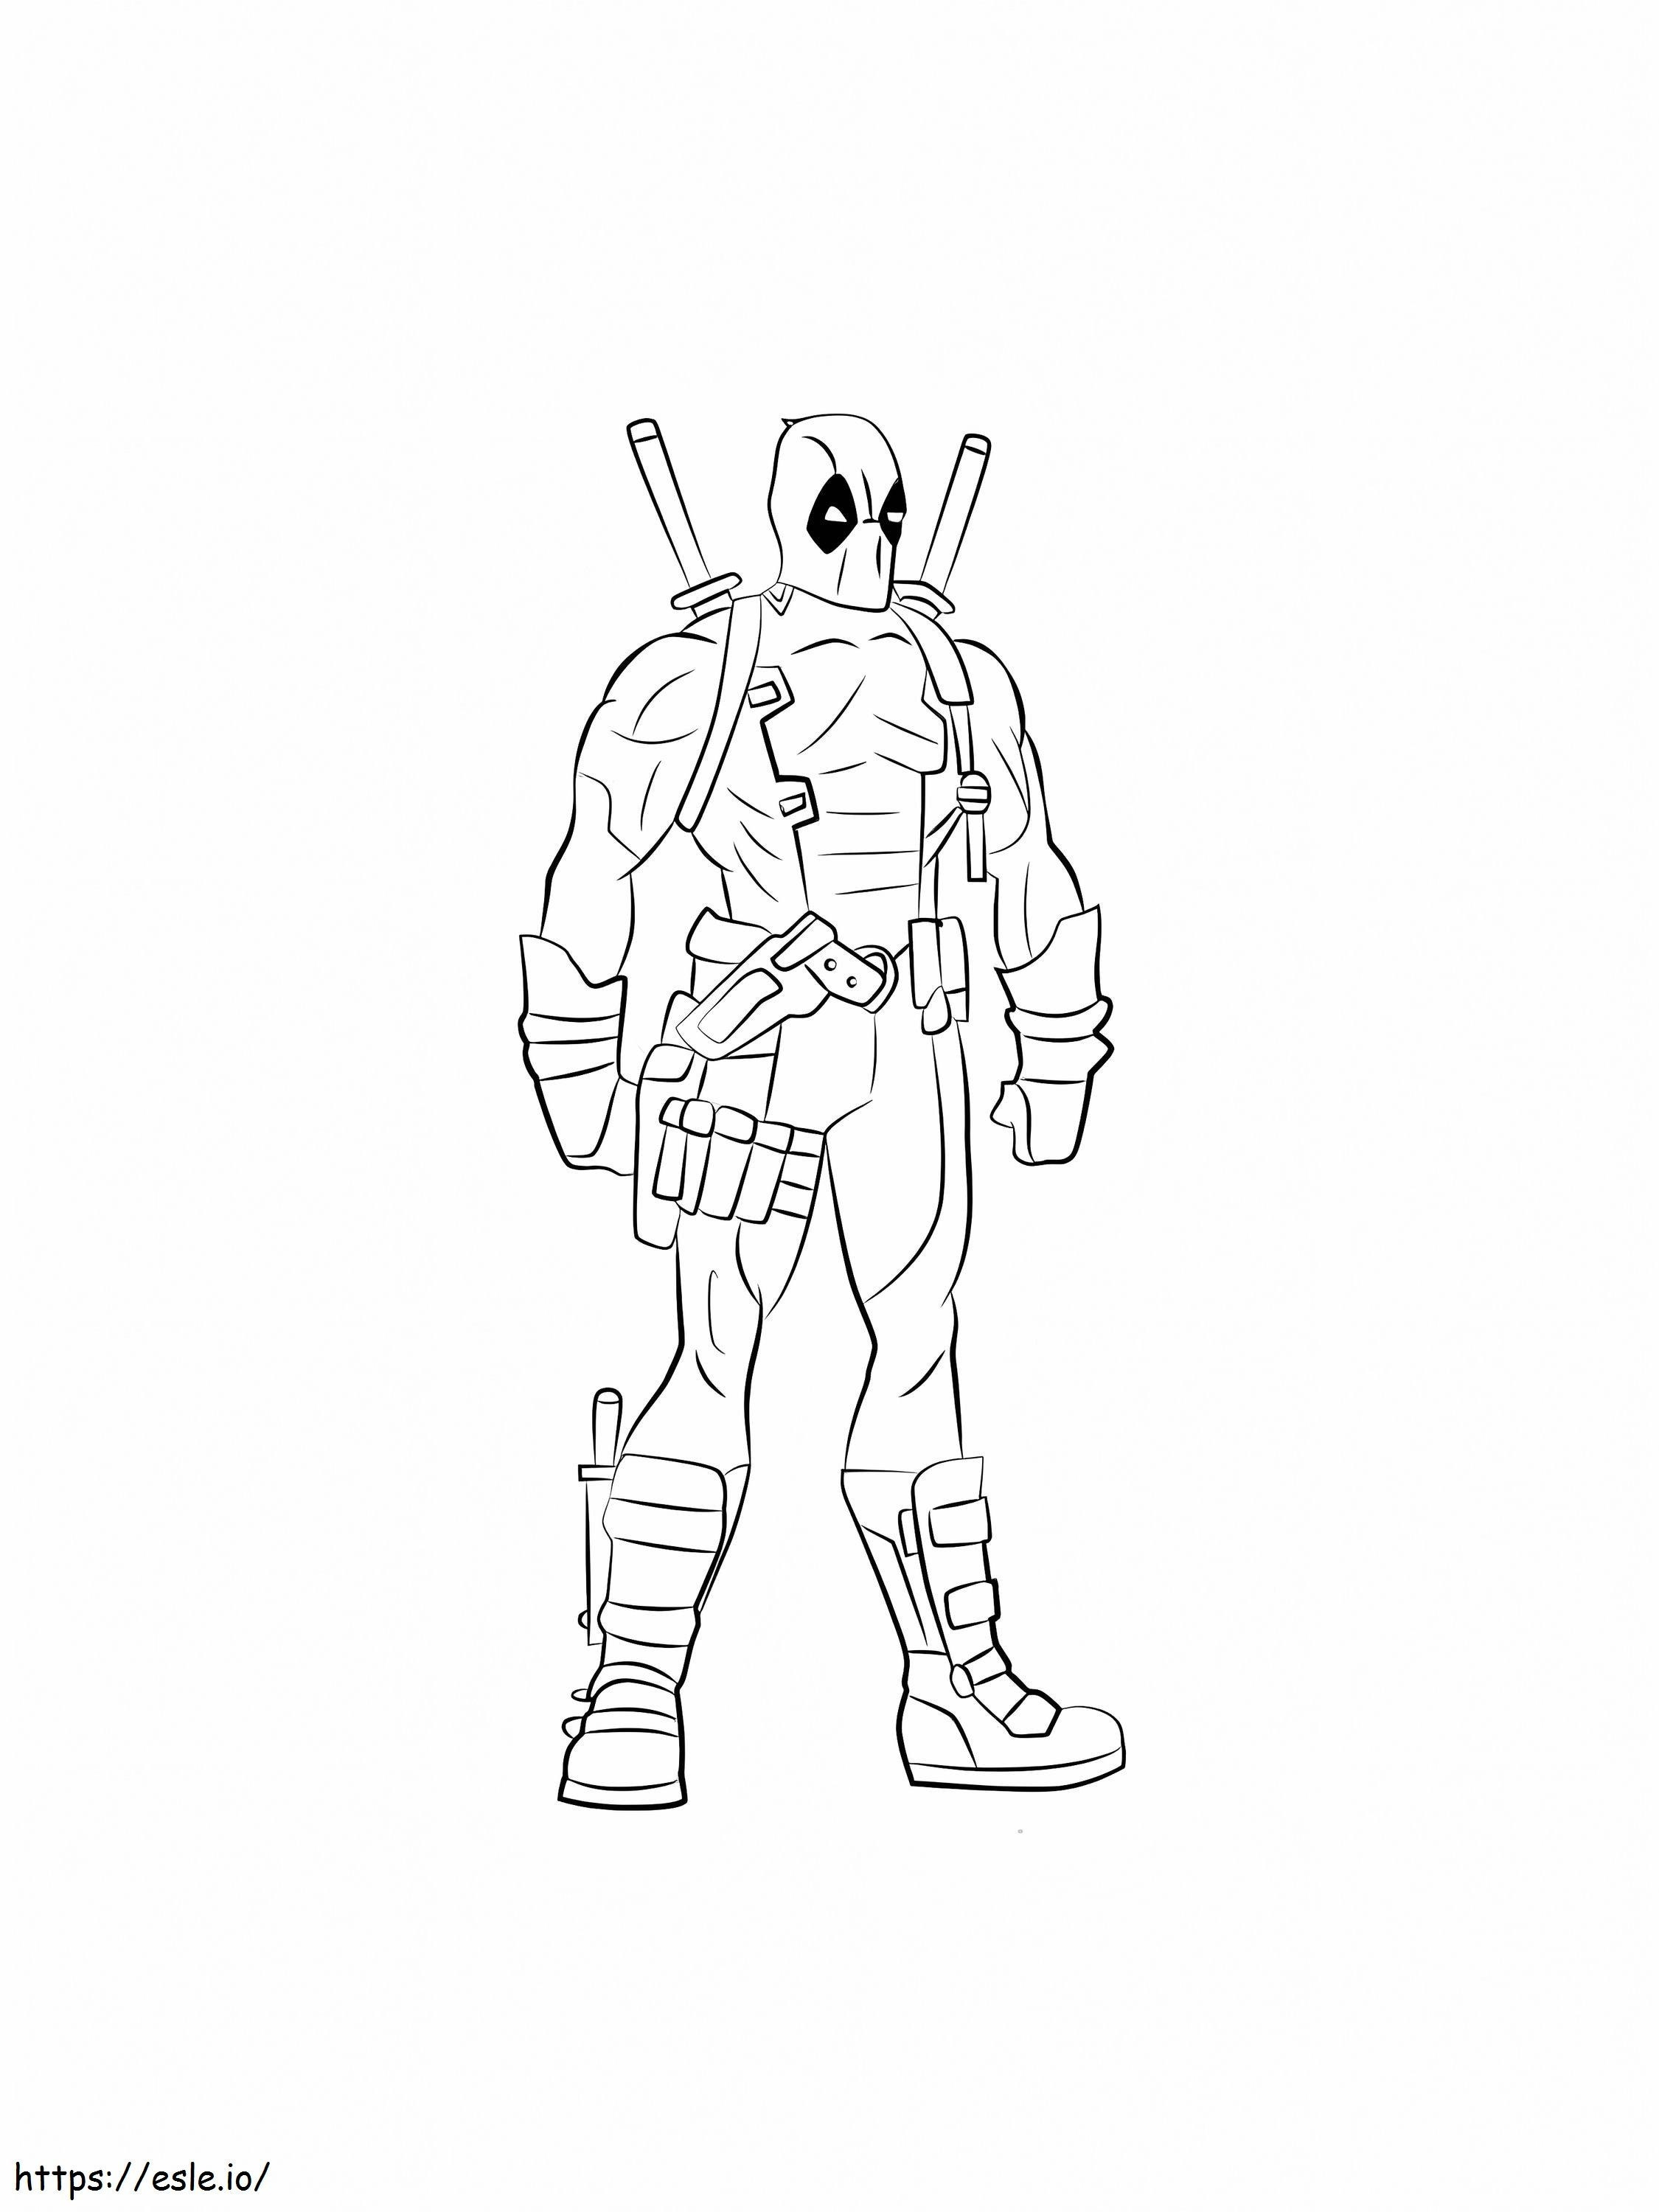 Disegnare Deadpool da colorare